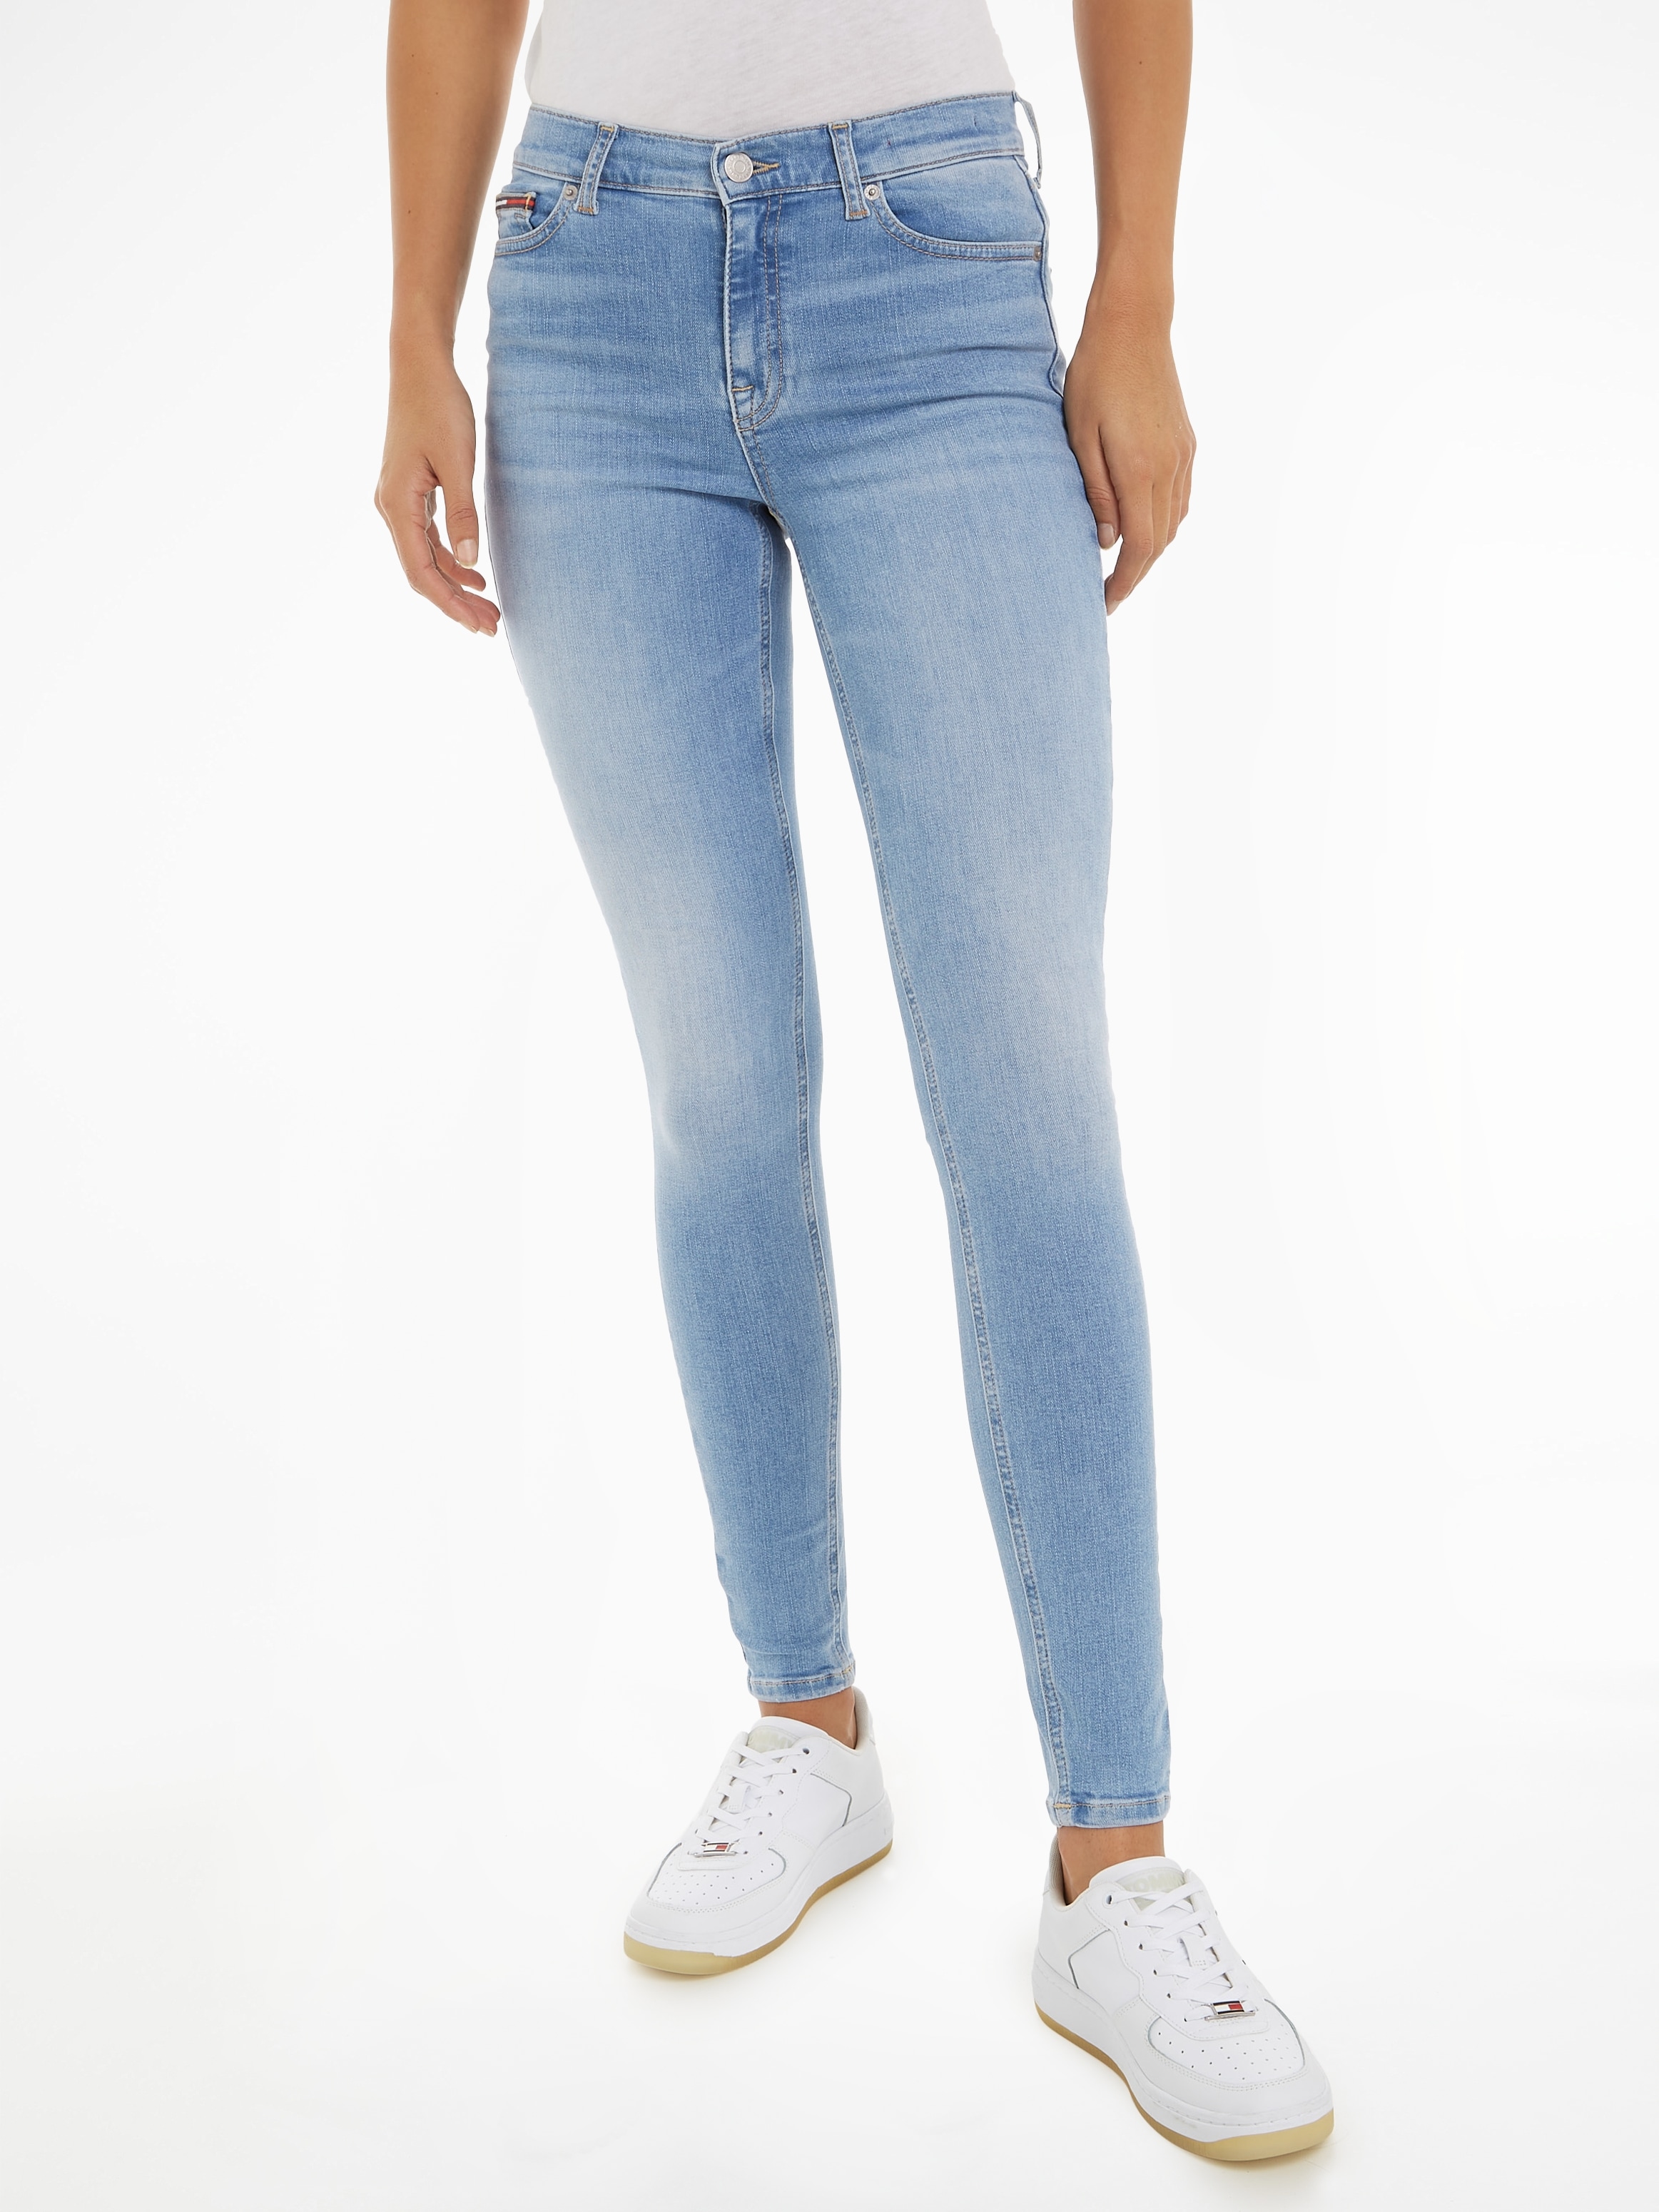 Jeans Labelapplikationen dezenten Skinny-fit-Jeans, shoppen mit Tommy